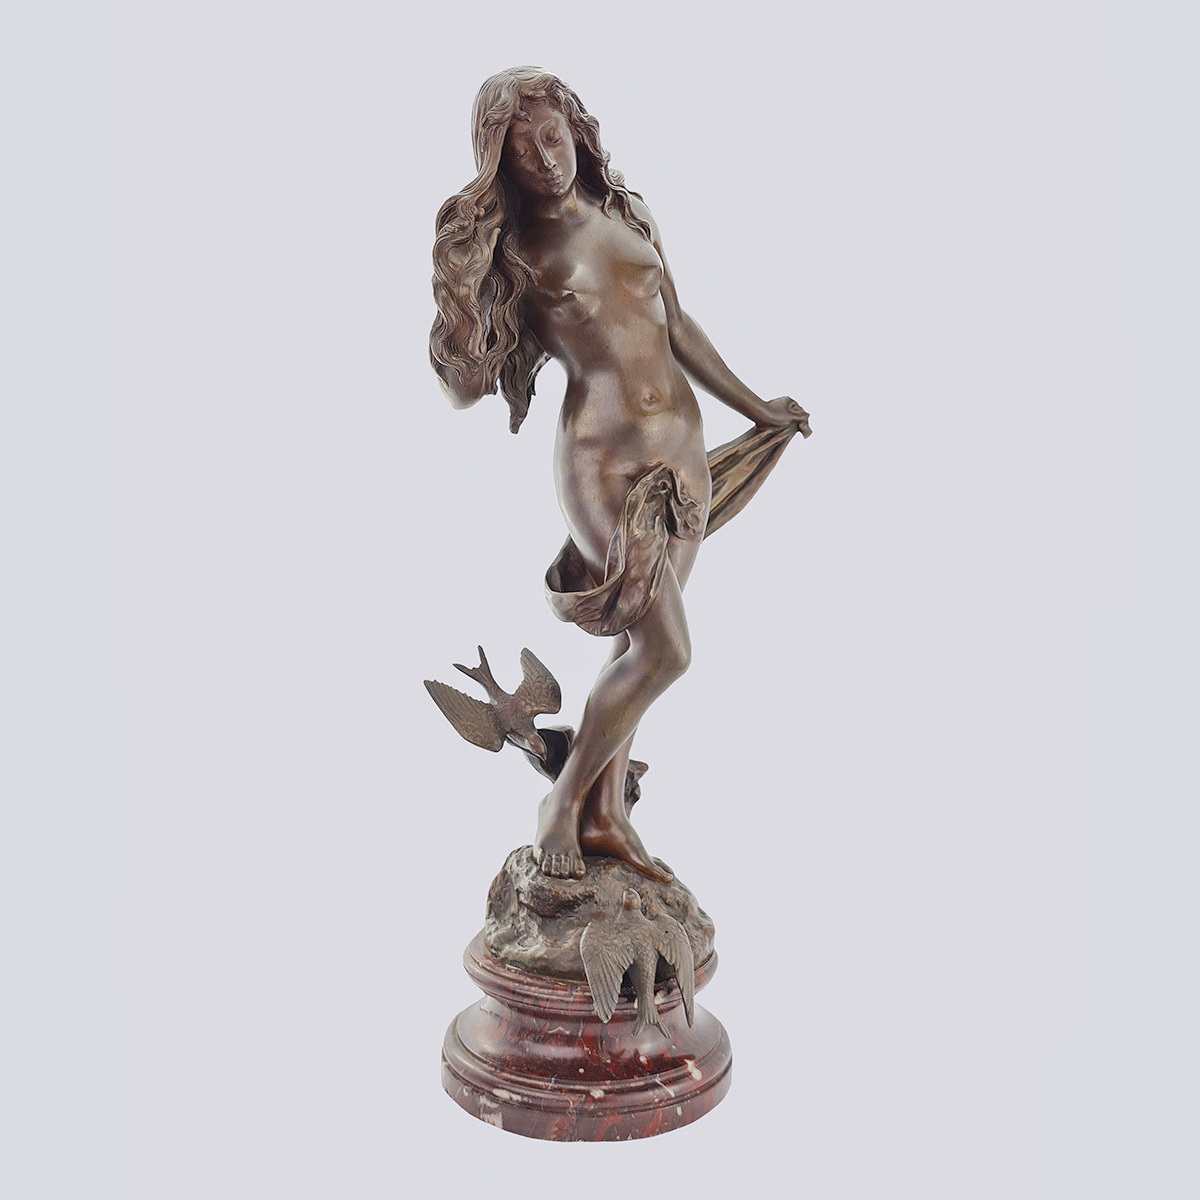 Скульптура «Девушка с голубями» из бронзы конца 19 века (E. Wante)